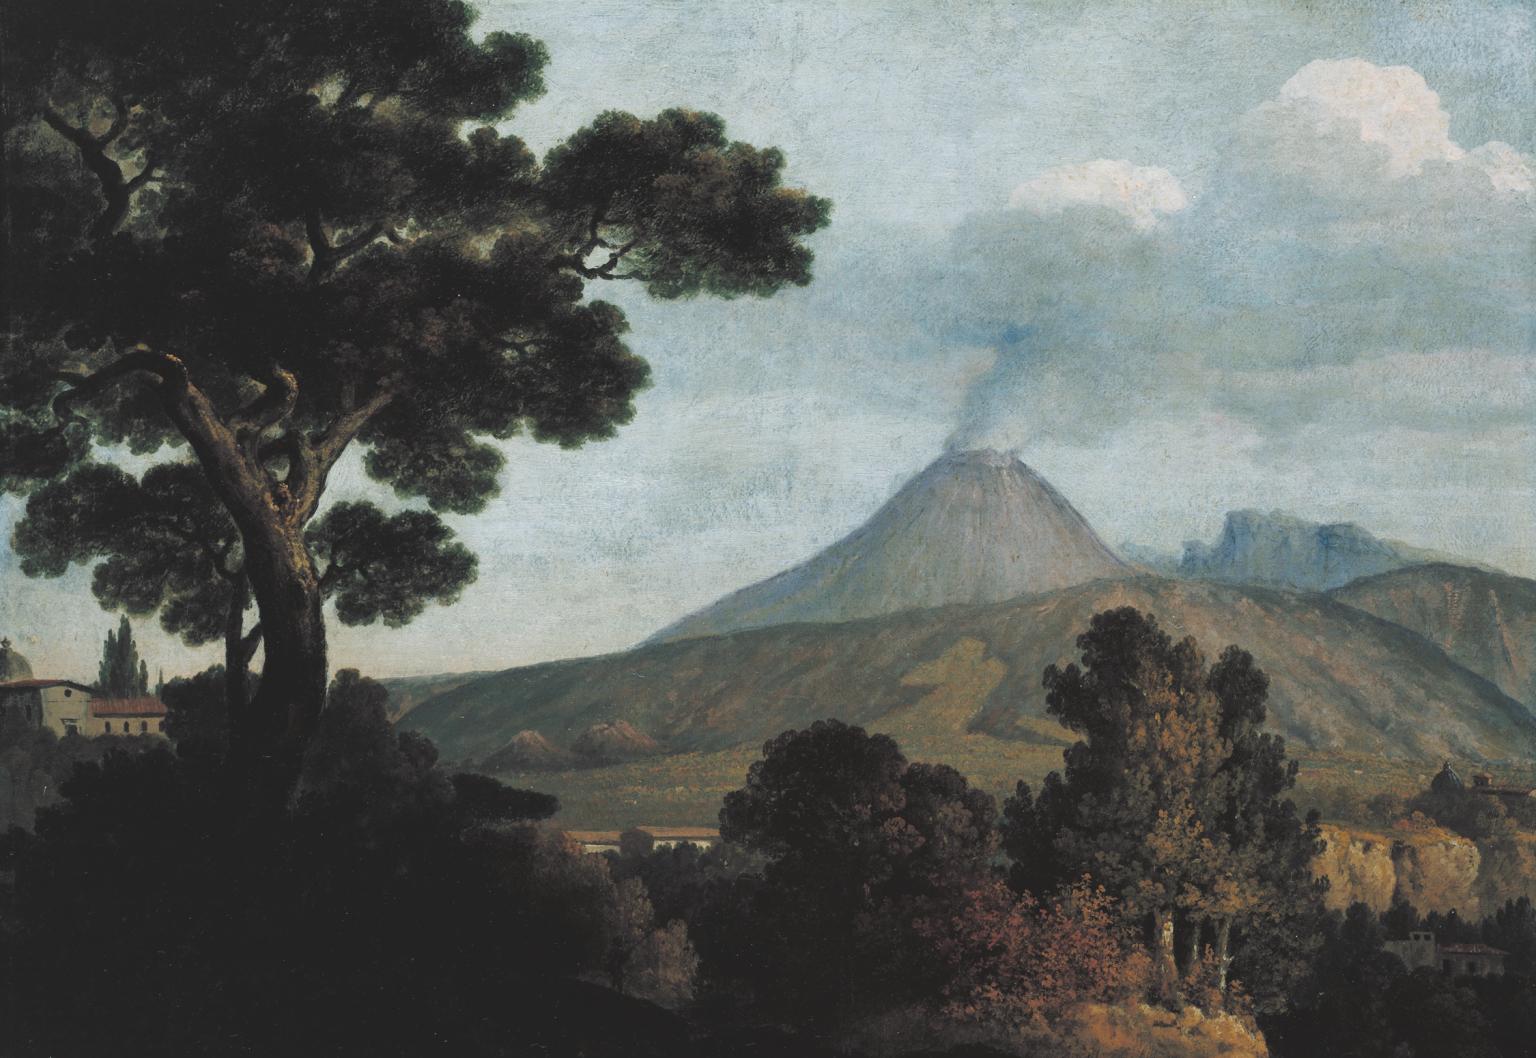 T01844: Mount Vesuvius from Torre dell’Annunziata near Naples